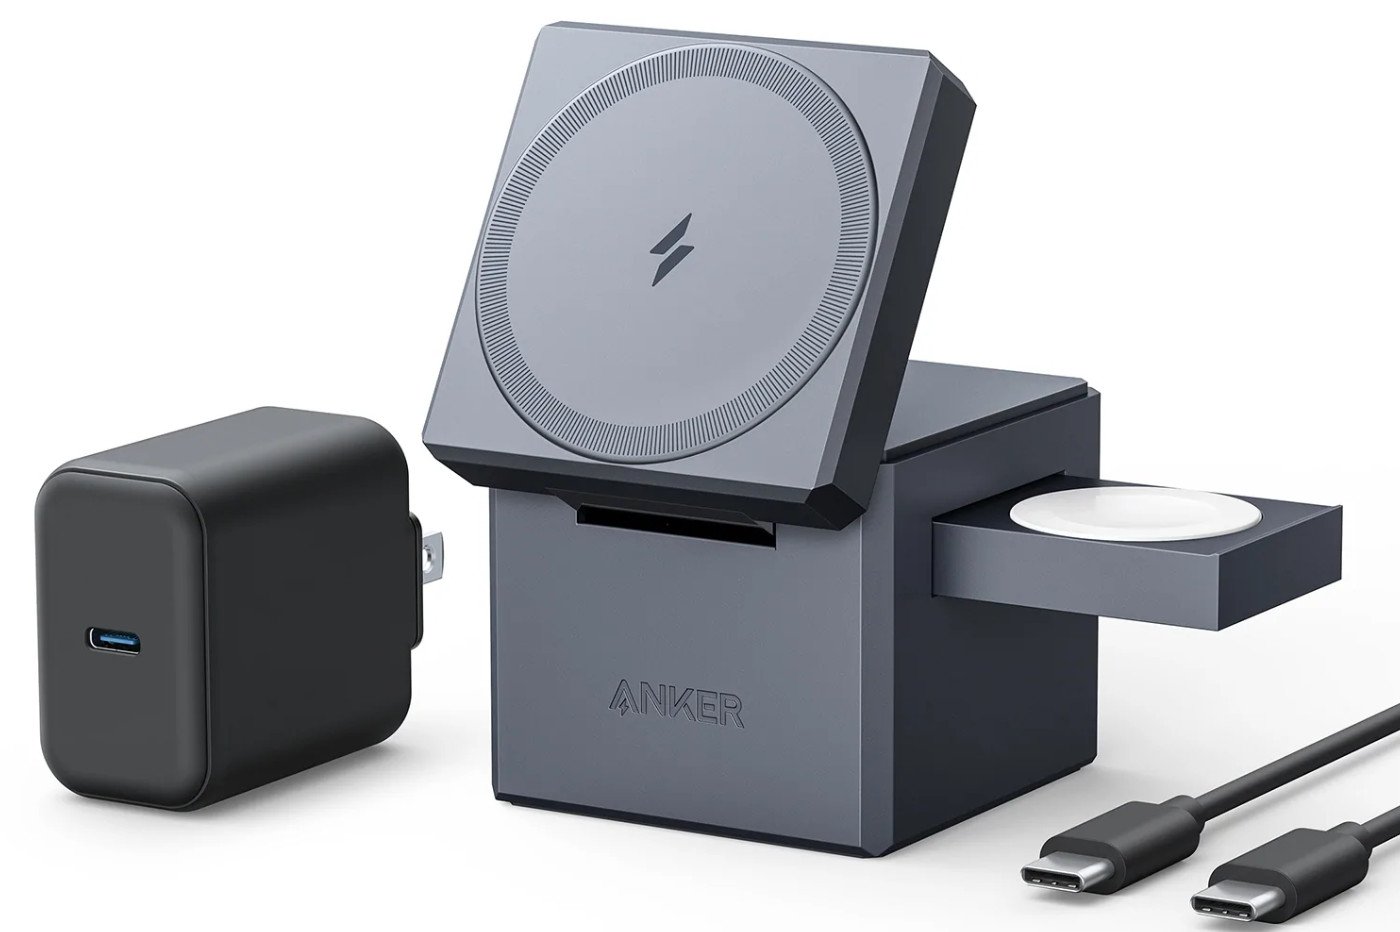 Anker propose un concurrent du chargeur MagSafe pour les iPhone 12